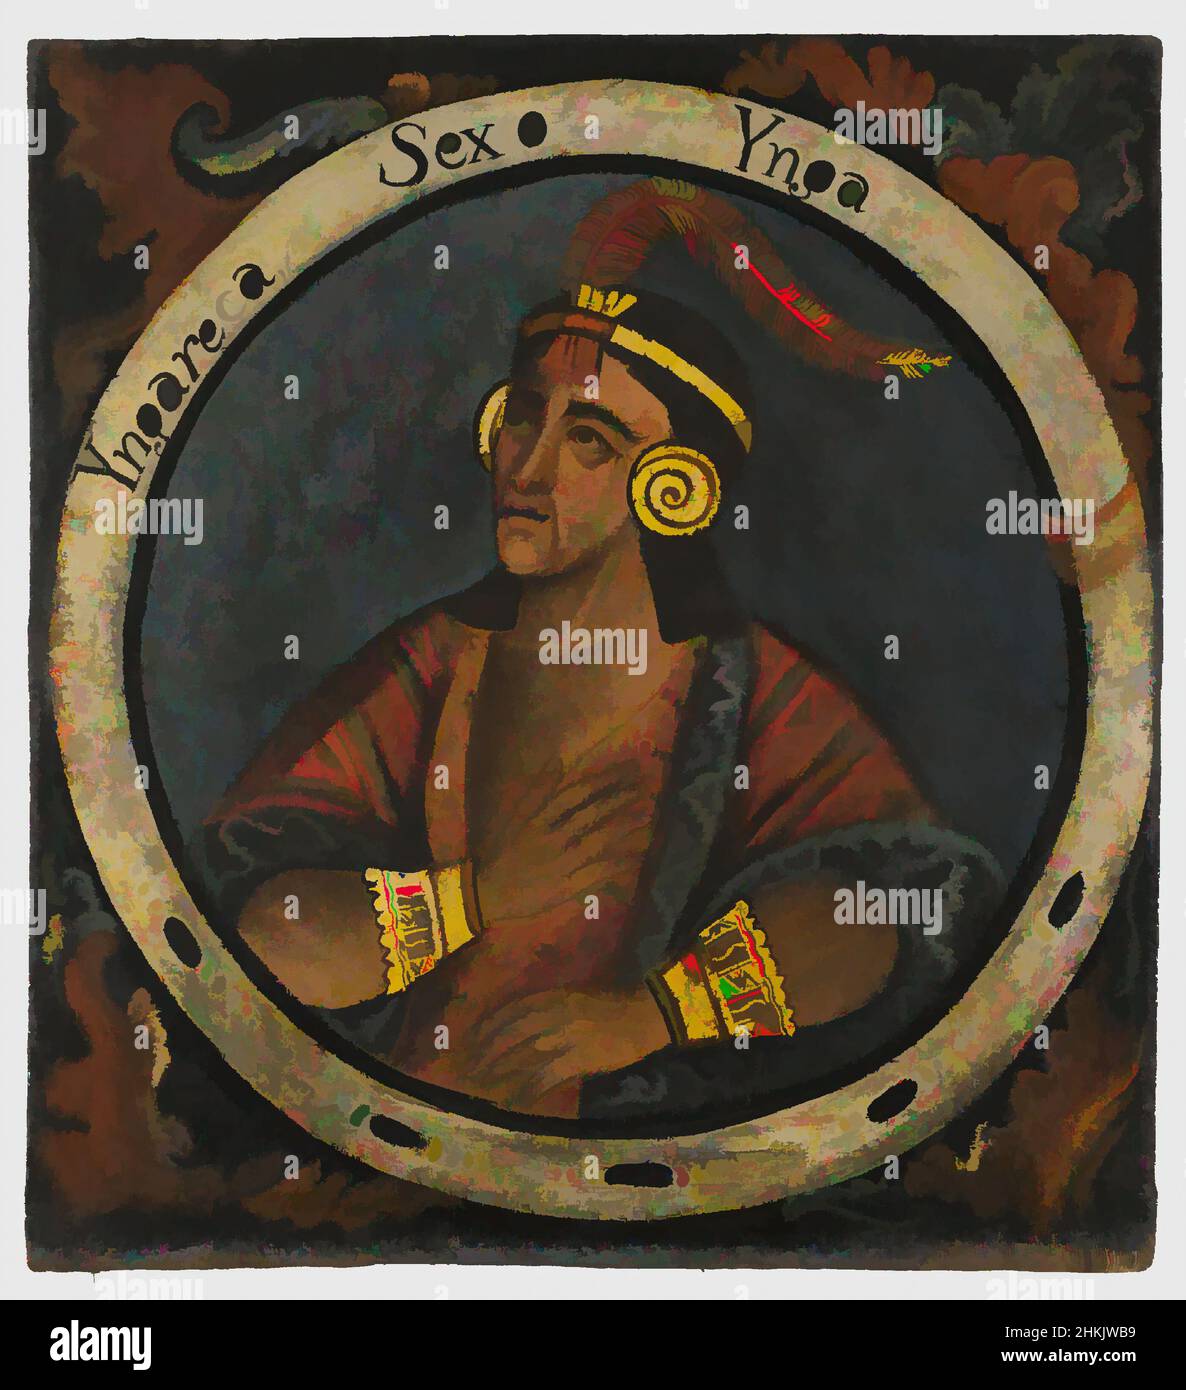 Kunst inspiriert von Inka Roca, Sechster Inka, 1 von 14 Porträts der Inka-Könige, Peruanisch, Öl auf Leinwand, Peru, Mitte 18th Jahrhundert, Wahrscheinlich, Kolonialzeit, 23 3/8 x 21 1/2in., 59,4 x 54,6cm, 18th Jahrhundert, Armbänder, Eroberung, Ohrringe, Ohrspulen, Kopfschmuck, hispanische Herkunft, historisch, Inca, Classic Works modernisiert von Artotop mit einem Schuss Moderne. Formen, Farbe und Wert, auffällige visuelle Wirkung auf Kunst. Emotionen durch Freiheit von Kunstwerken auf zeitgemäße Weise. Eine zeitlose Botschaft, die eine wild kreative neue Richtung verfolgt. Künstler, die sich dem digitalen Medium zuwenden und die Artotop NFT erschaffen Stockfoto